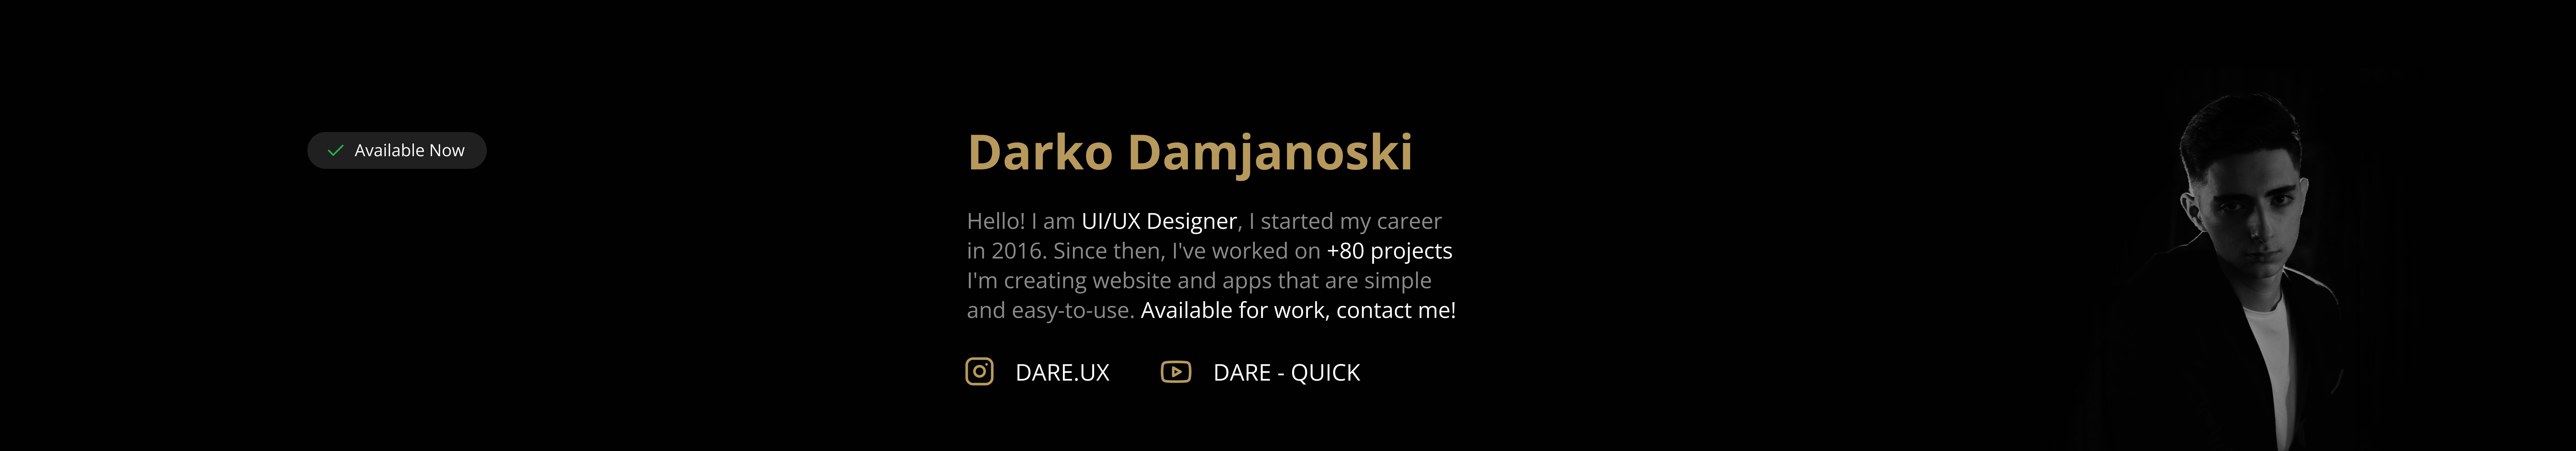 Darko Damjanoski's profile banner